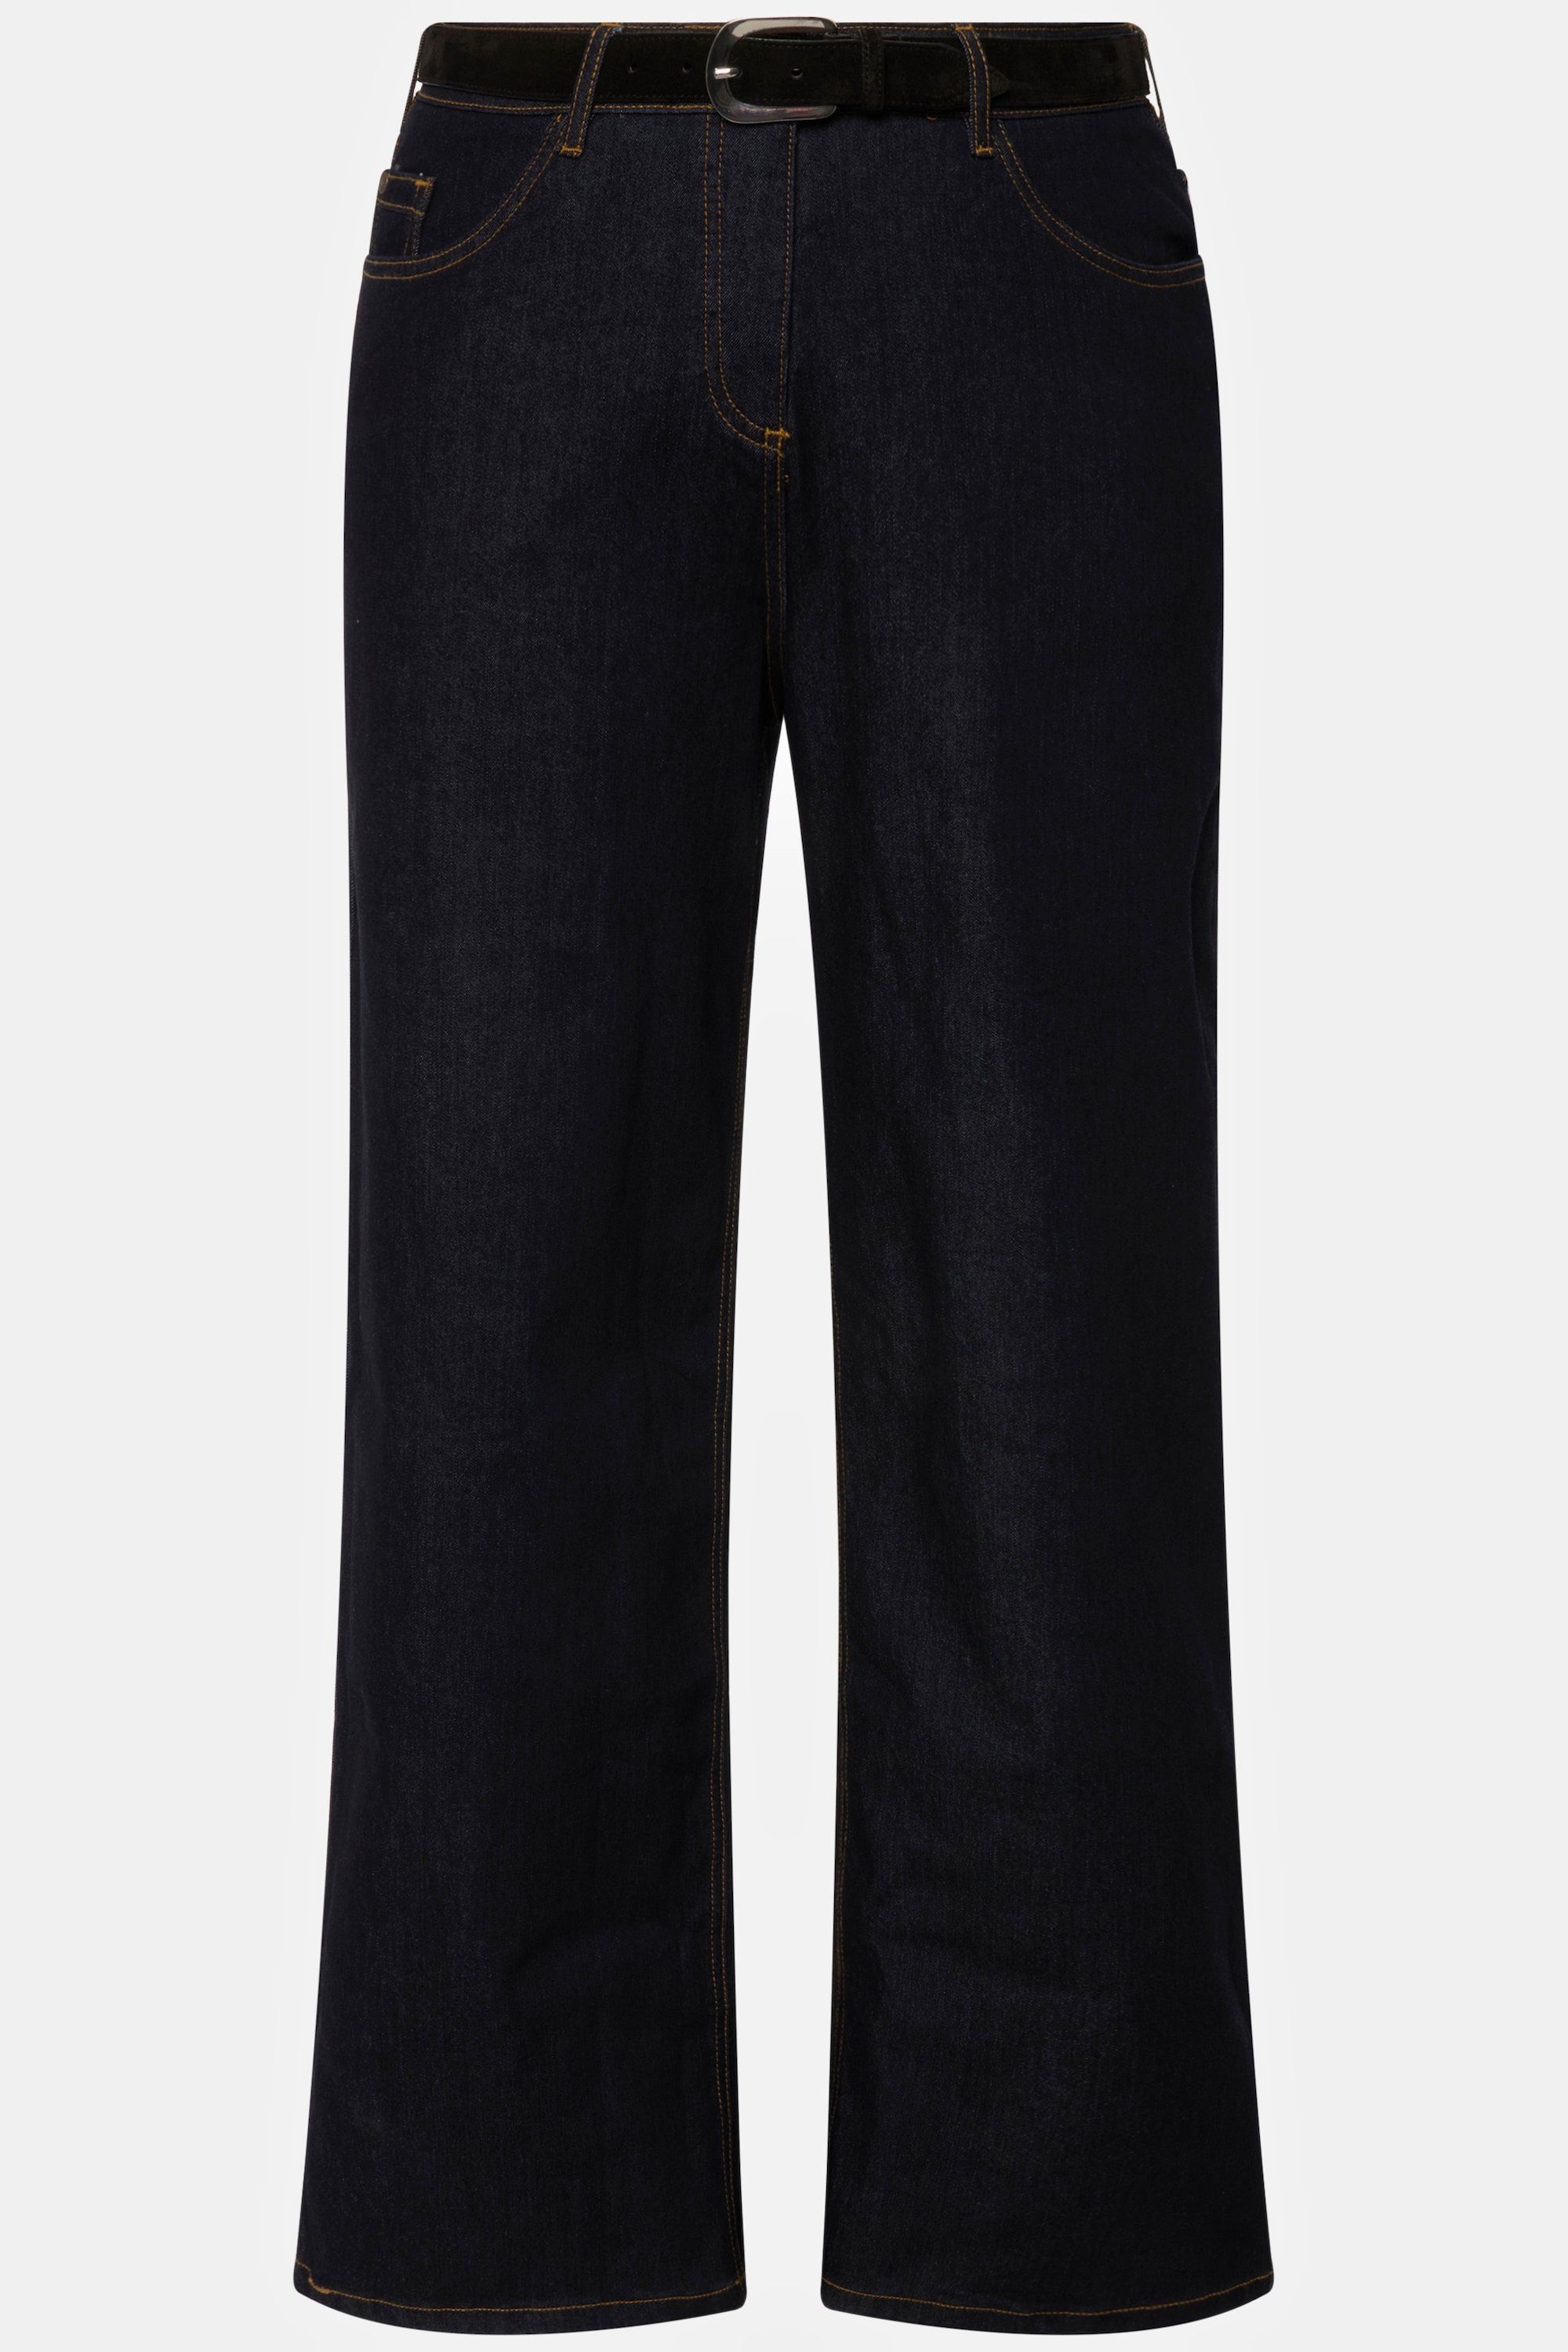 Jeans weites Funktionshose Bein 5-Pocket-Schnitt Mary Ulla dark blue Popken denim